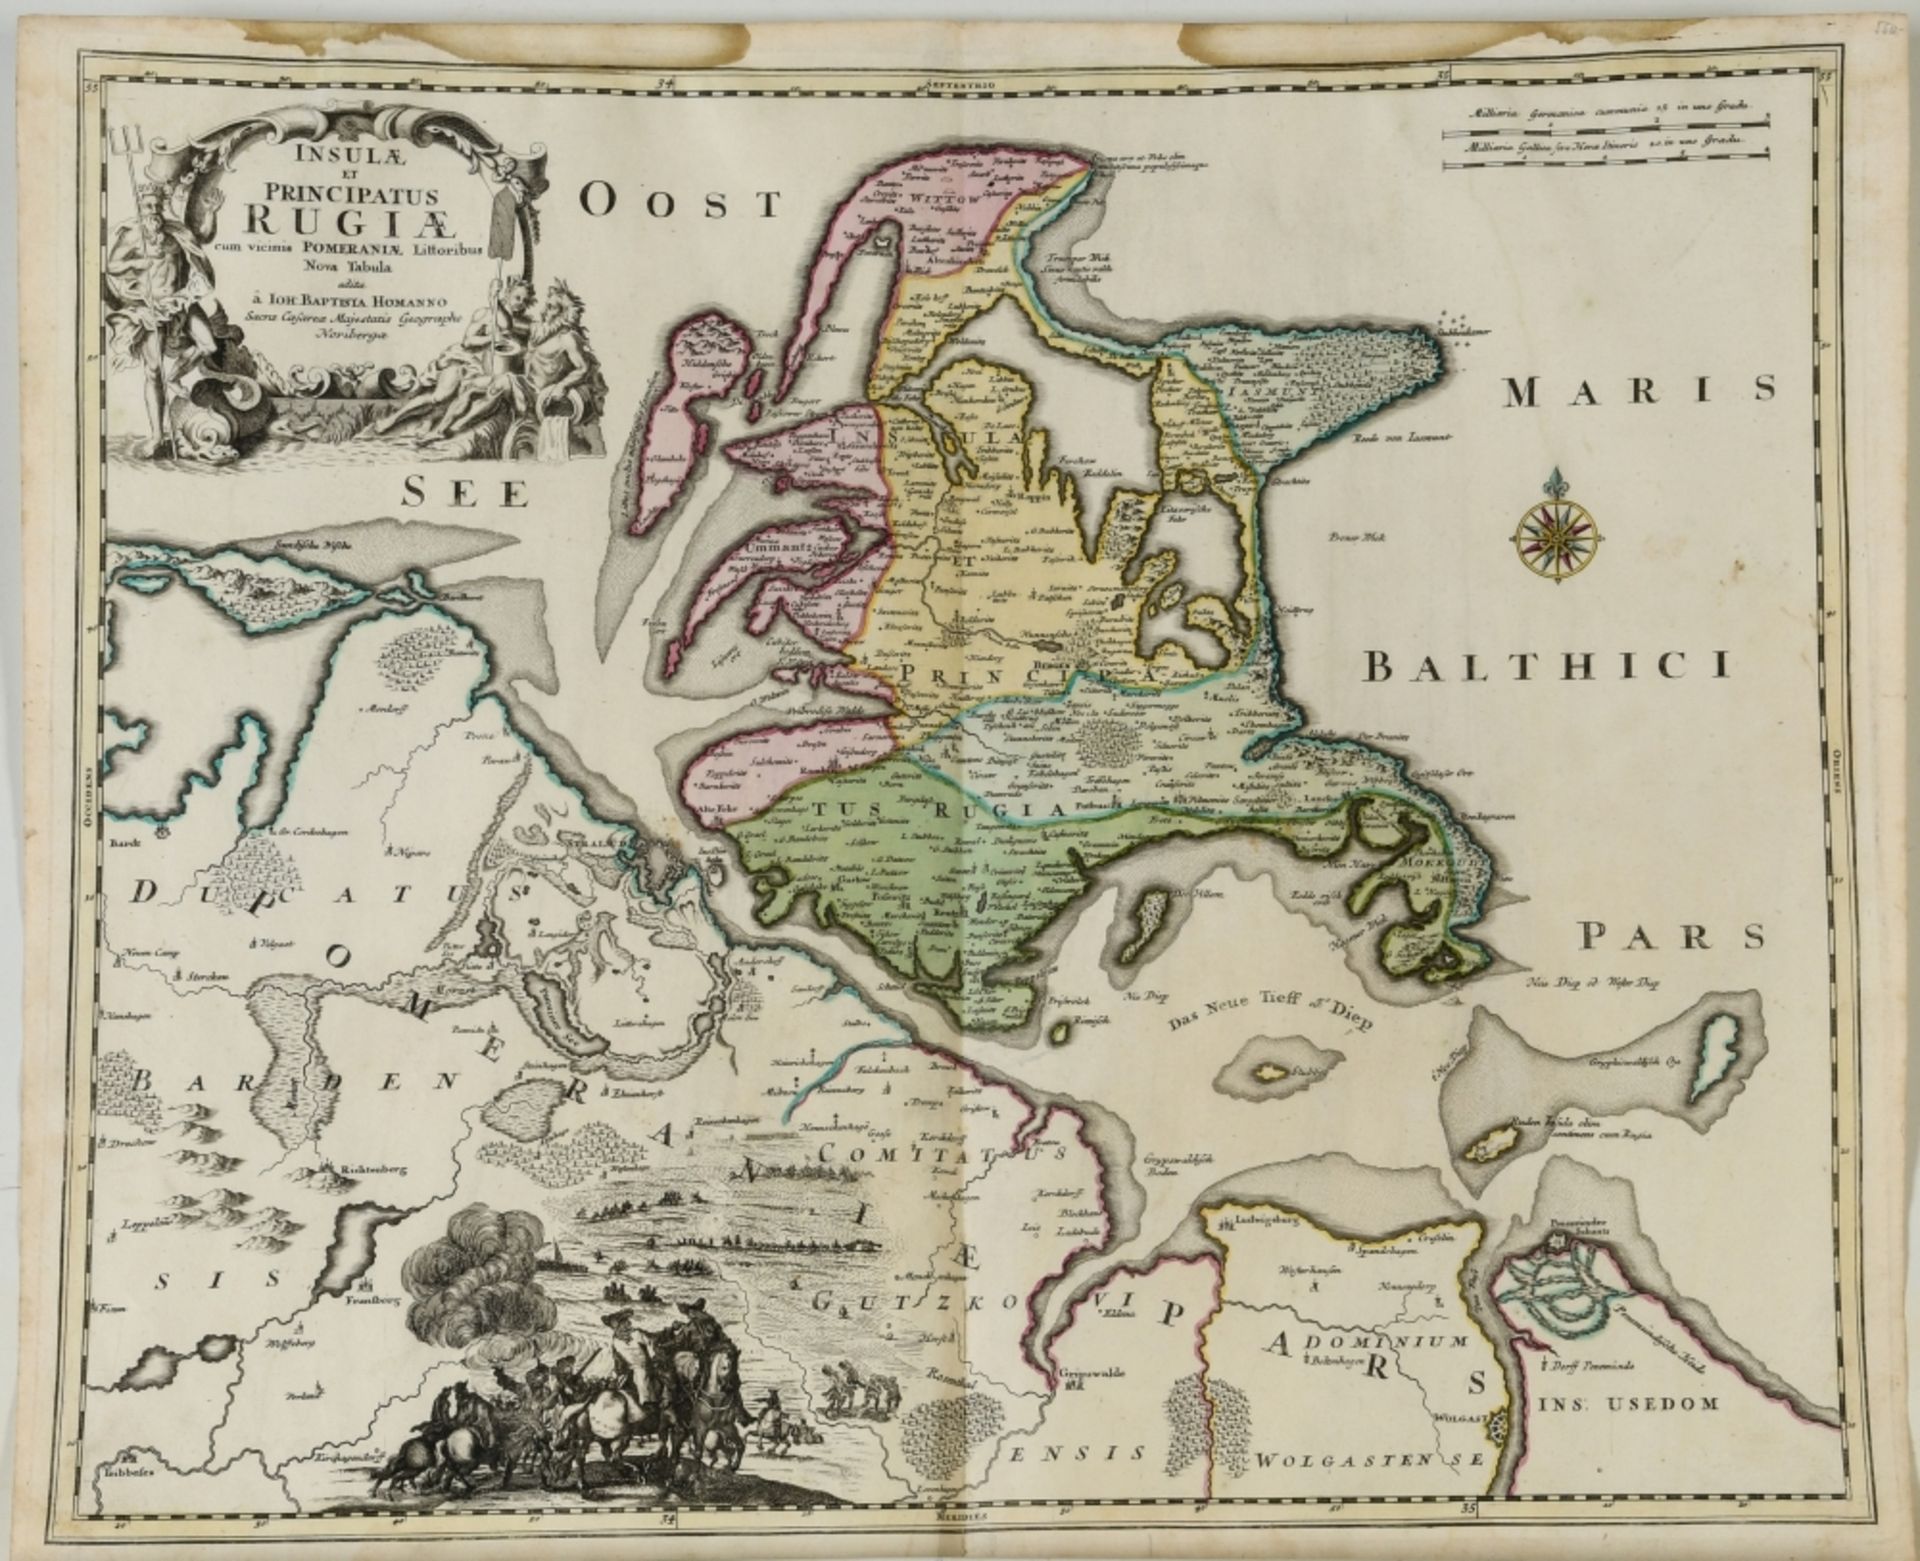 Landkarte "Insula et principatus Rugiae (Rügen)"